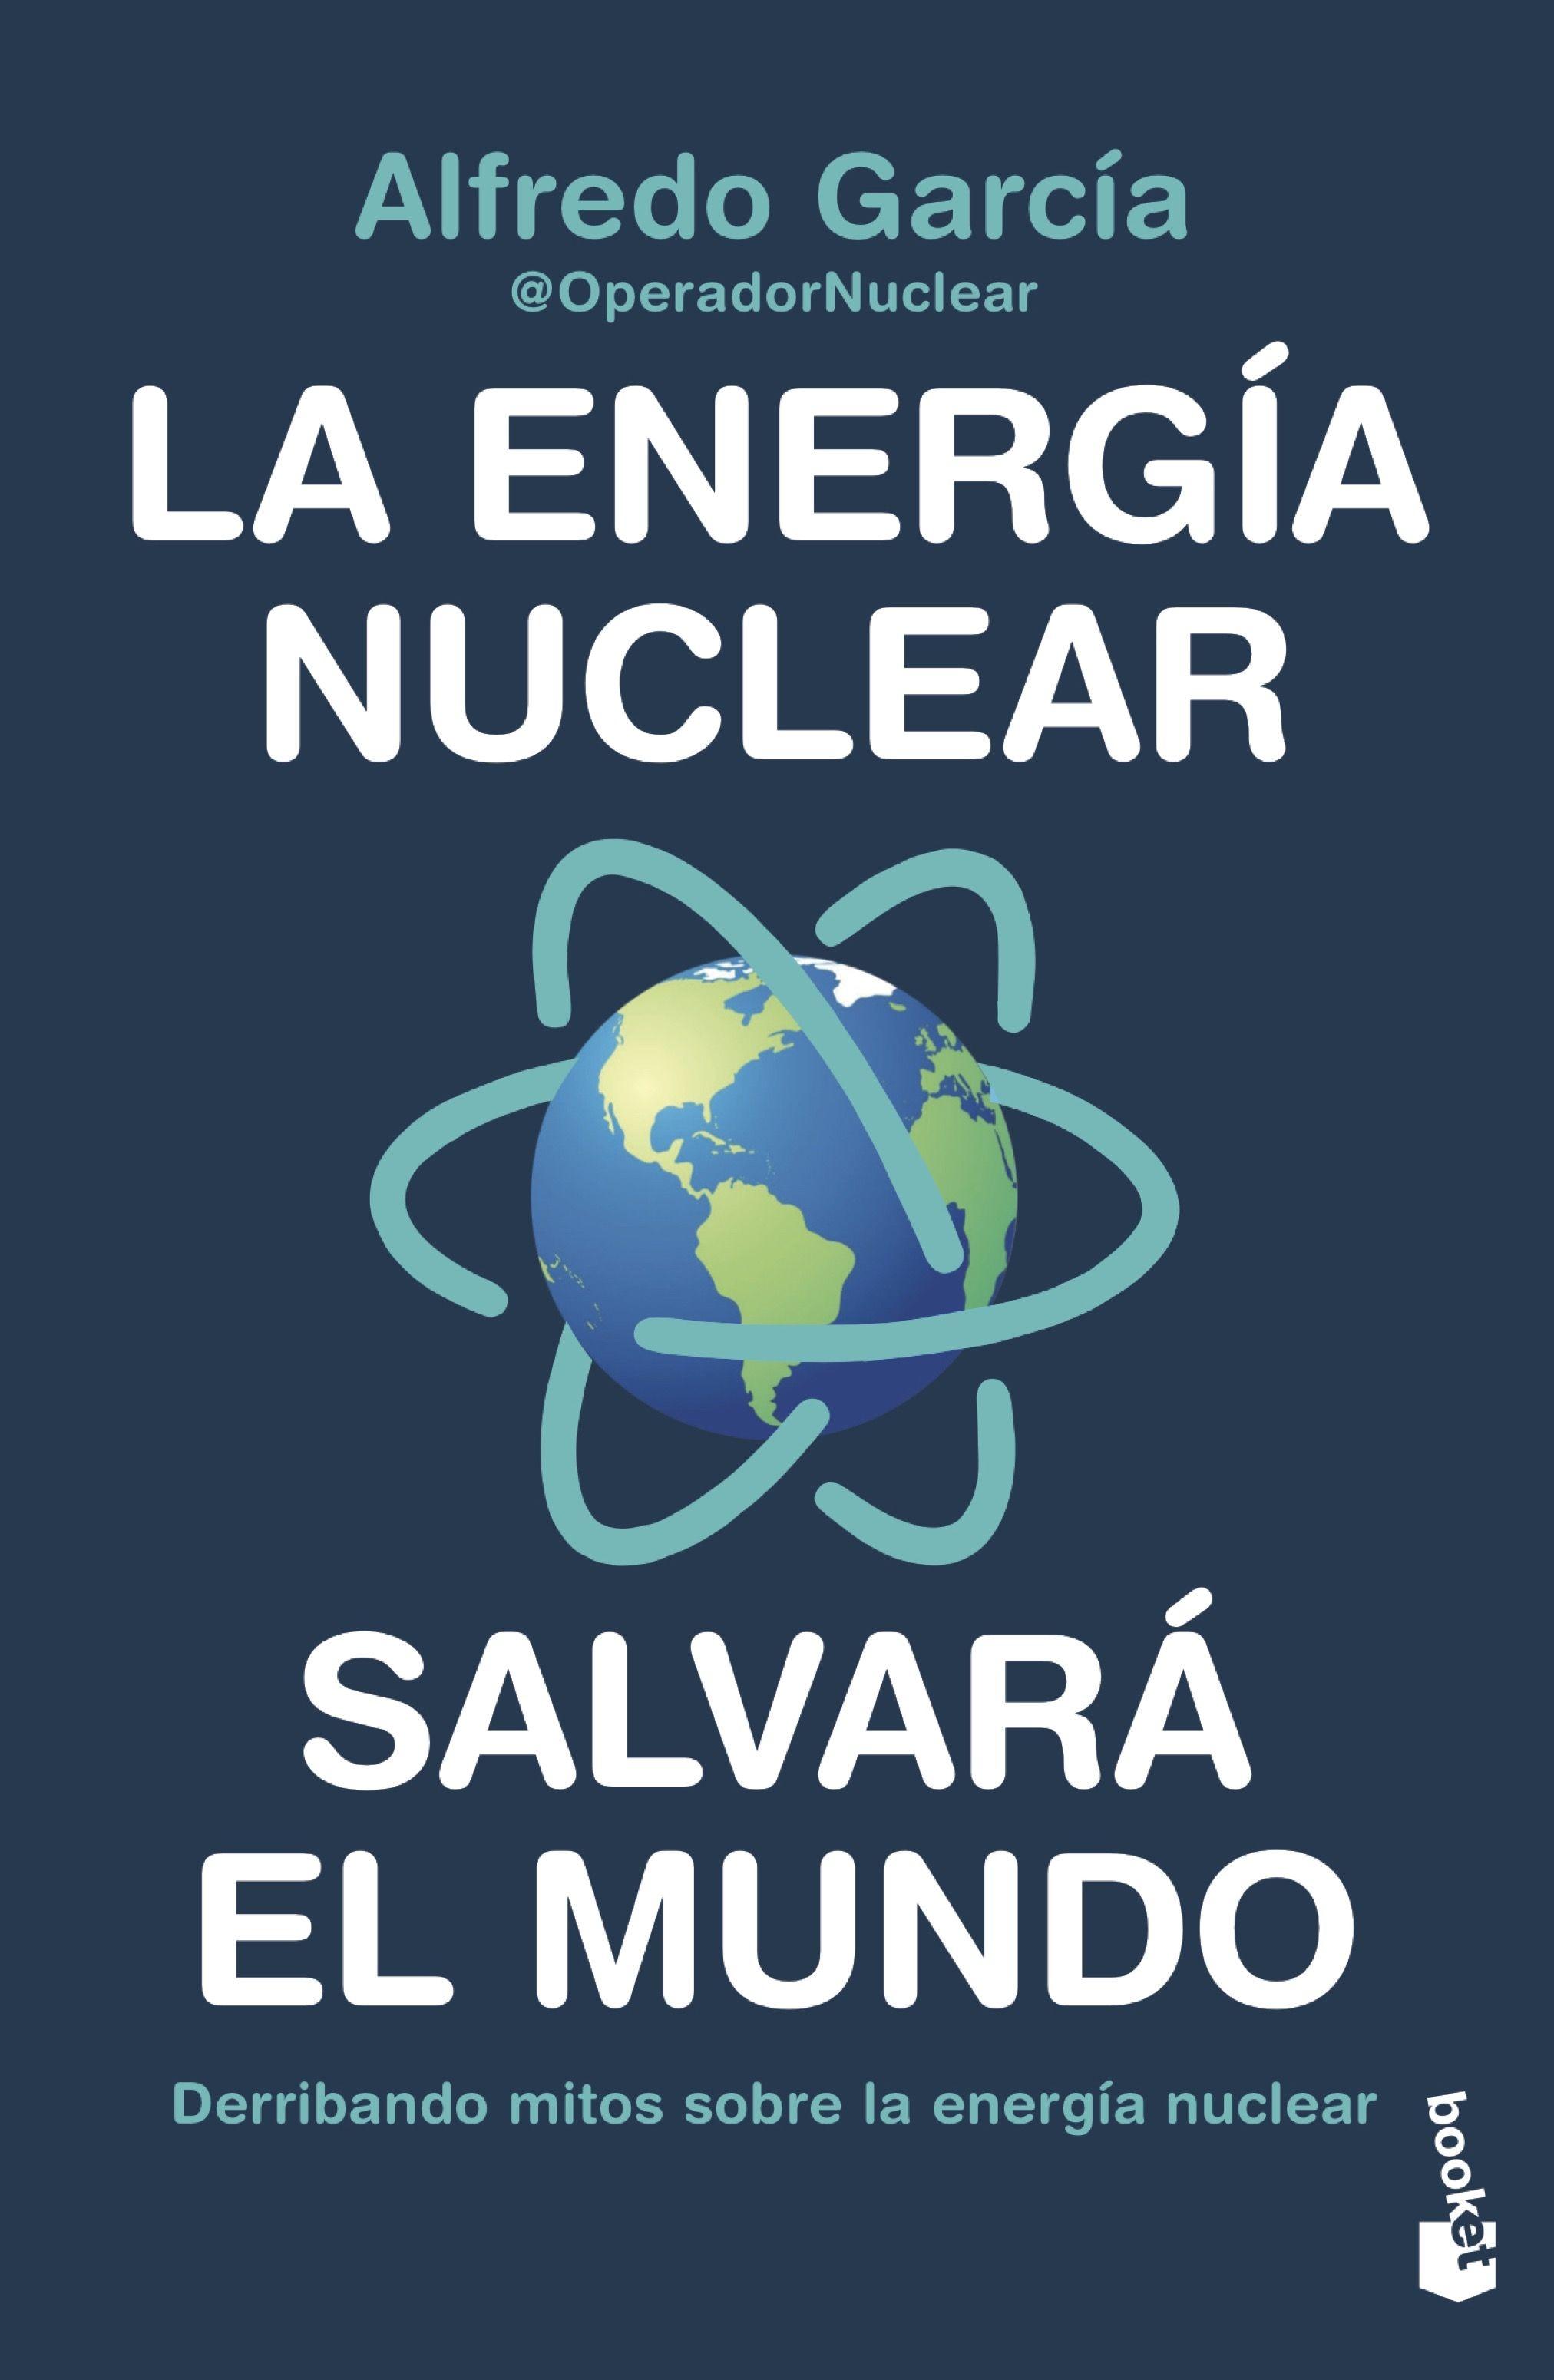 La Energía Nuclear Salvará el Mundo "Derribando Mitos sobre la Energía Nuclear". 